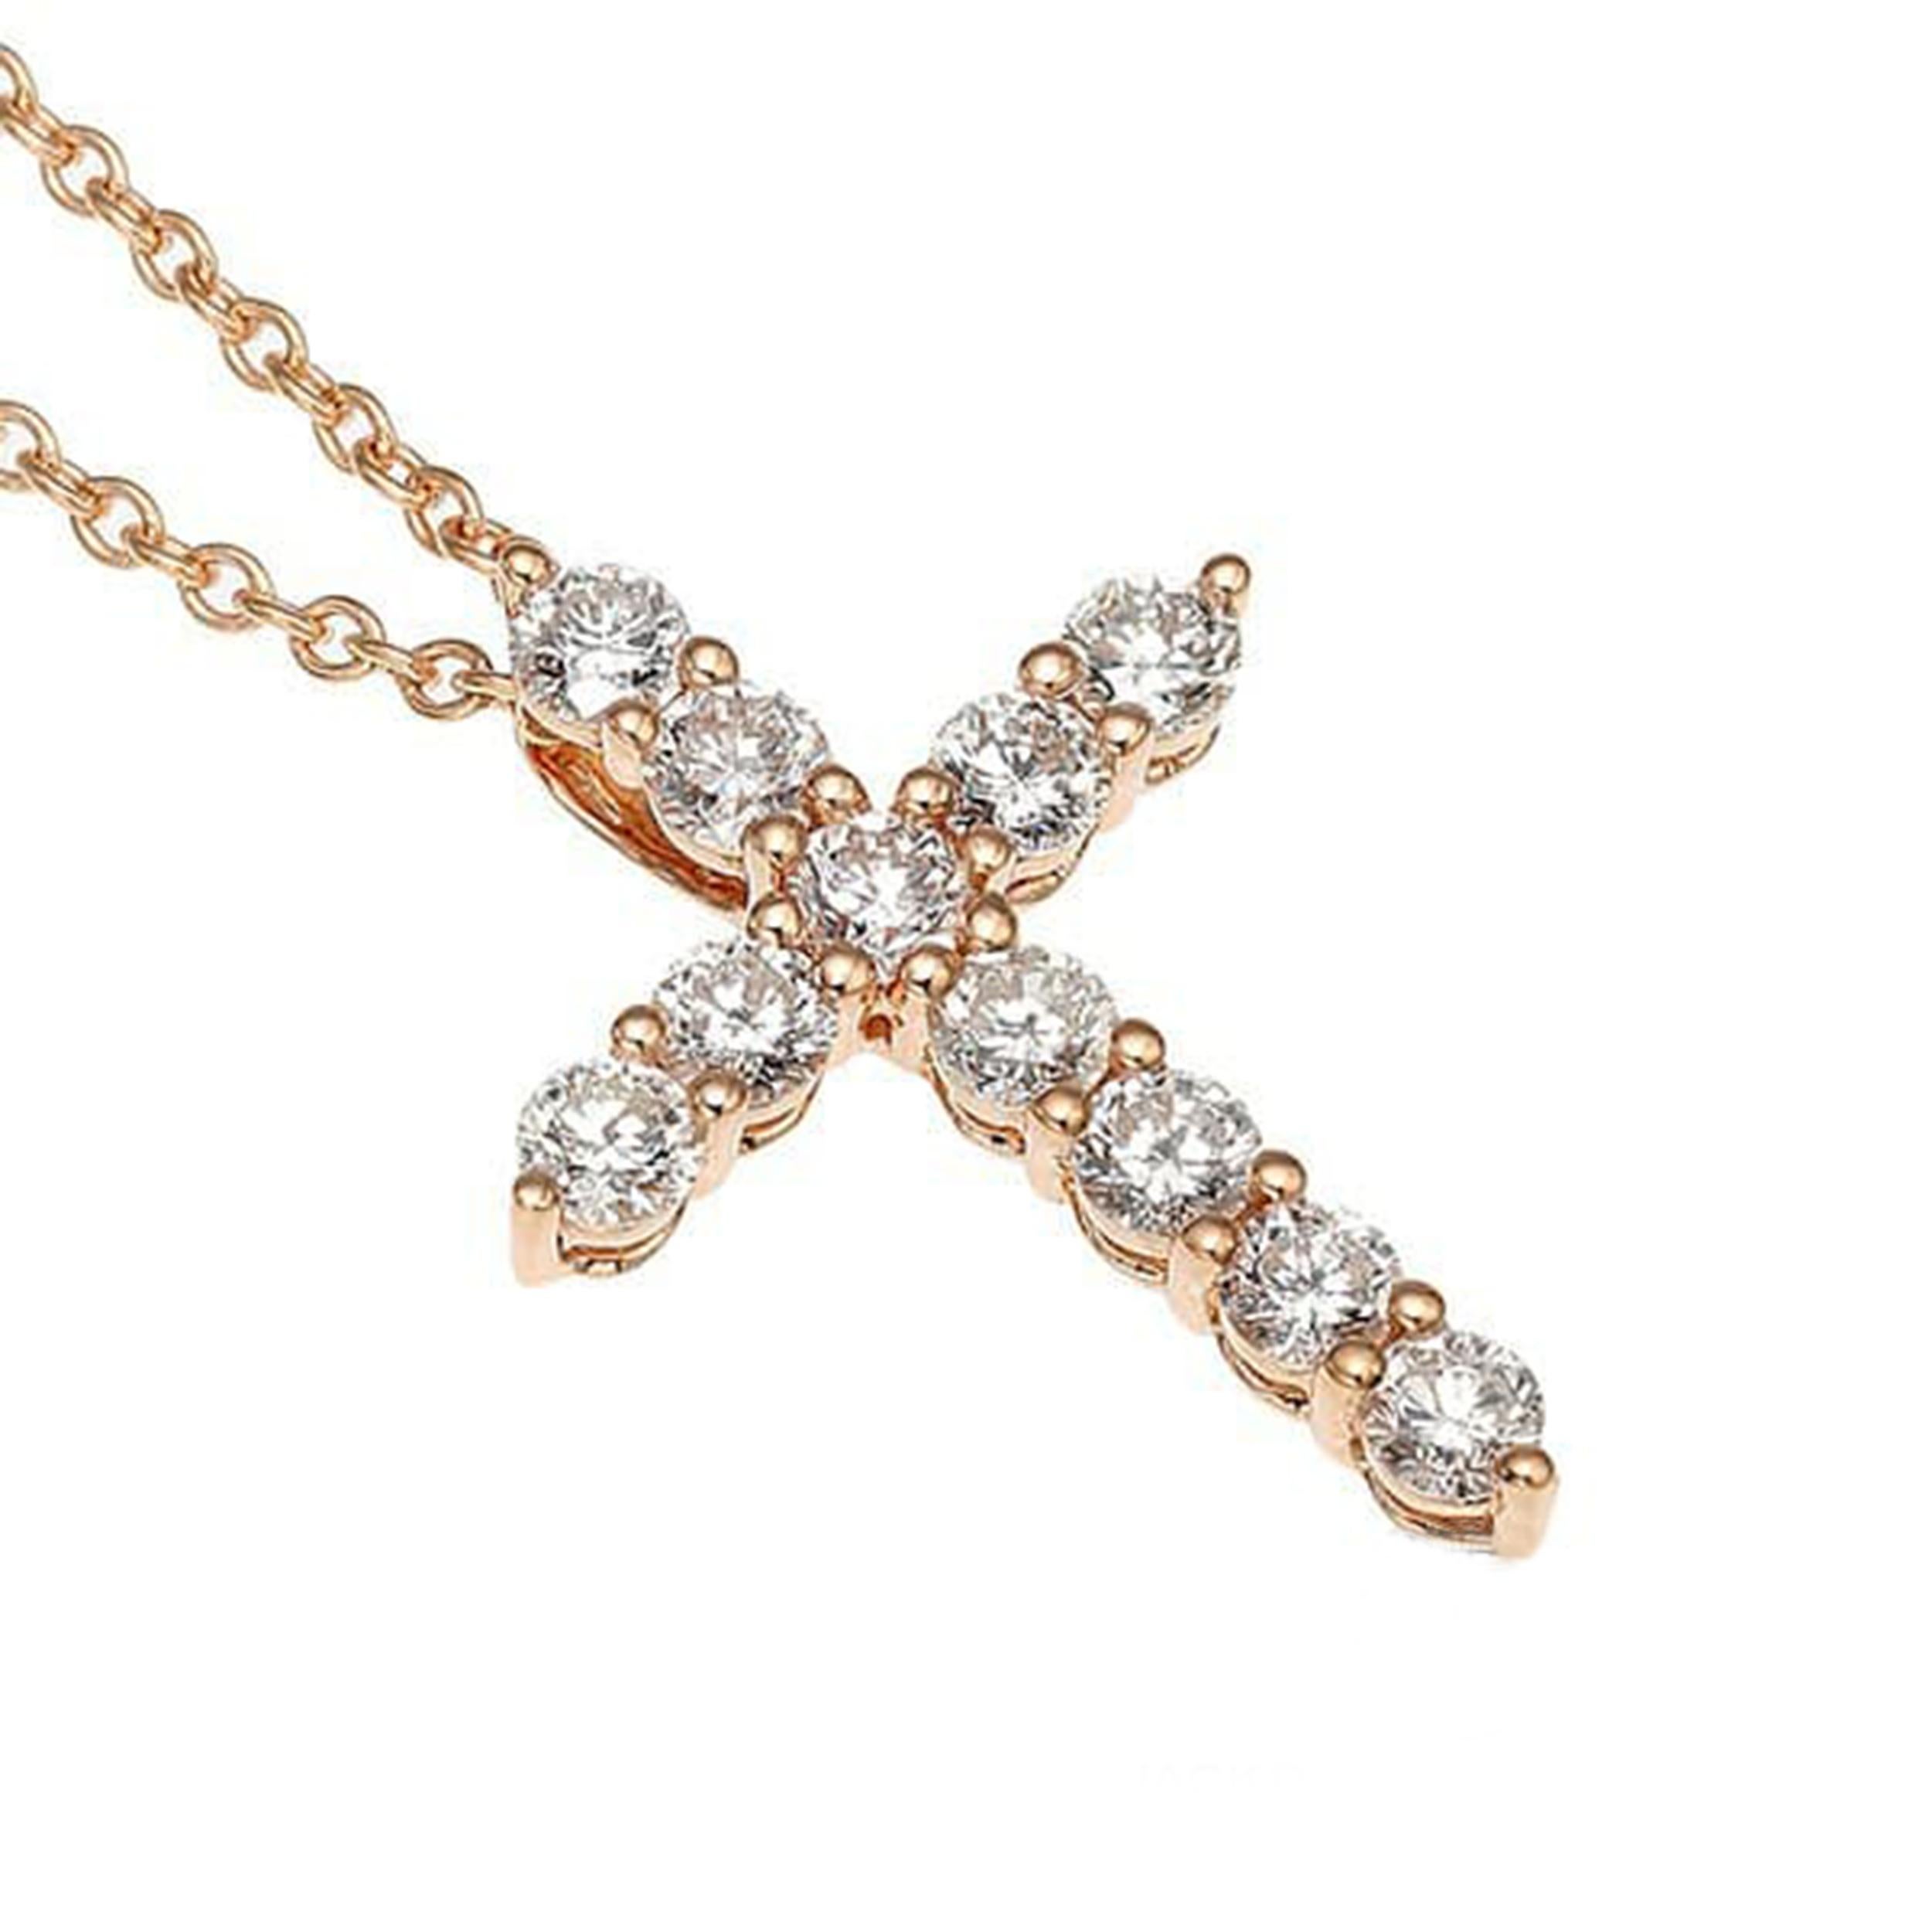 Rehaussez votre style avec ce superbe collier pendentif croix en or rose 18 carats et diamants. Fabriquée avec précision et élégance, cette pièce présente un poids total de diamants de 0,56 carat, ajoutant éclat et sophistication à tout